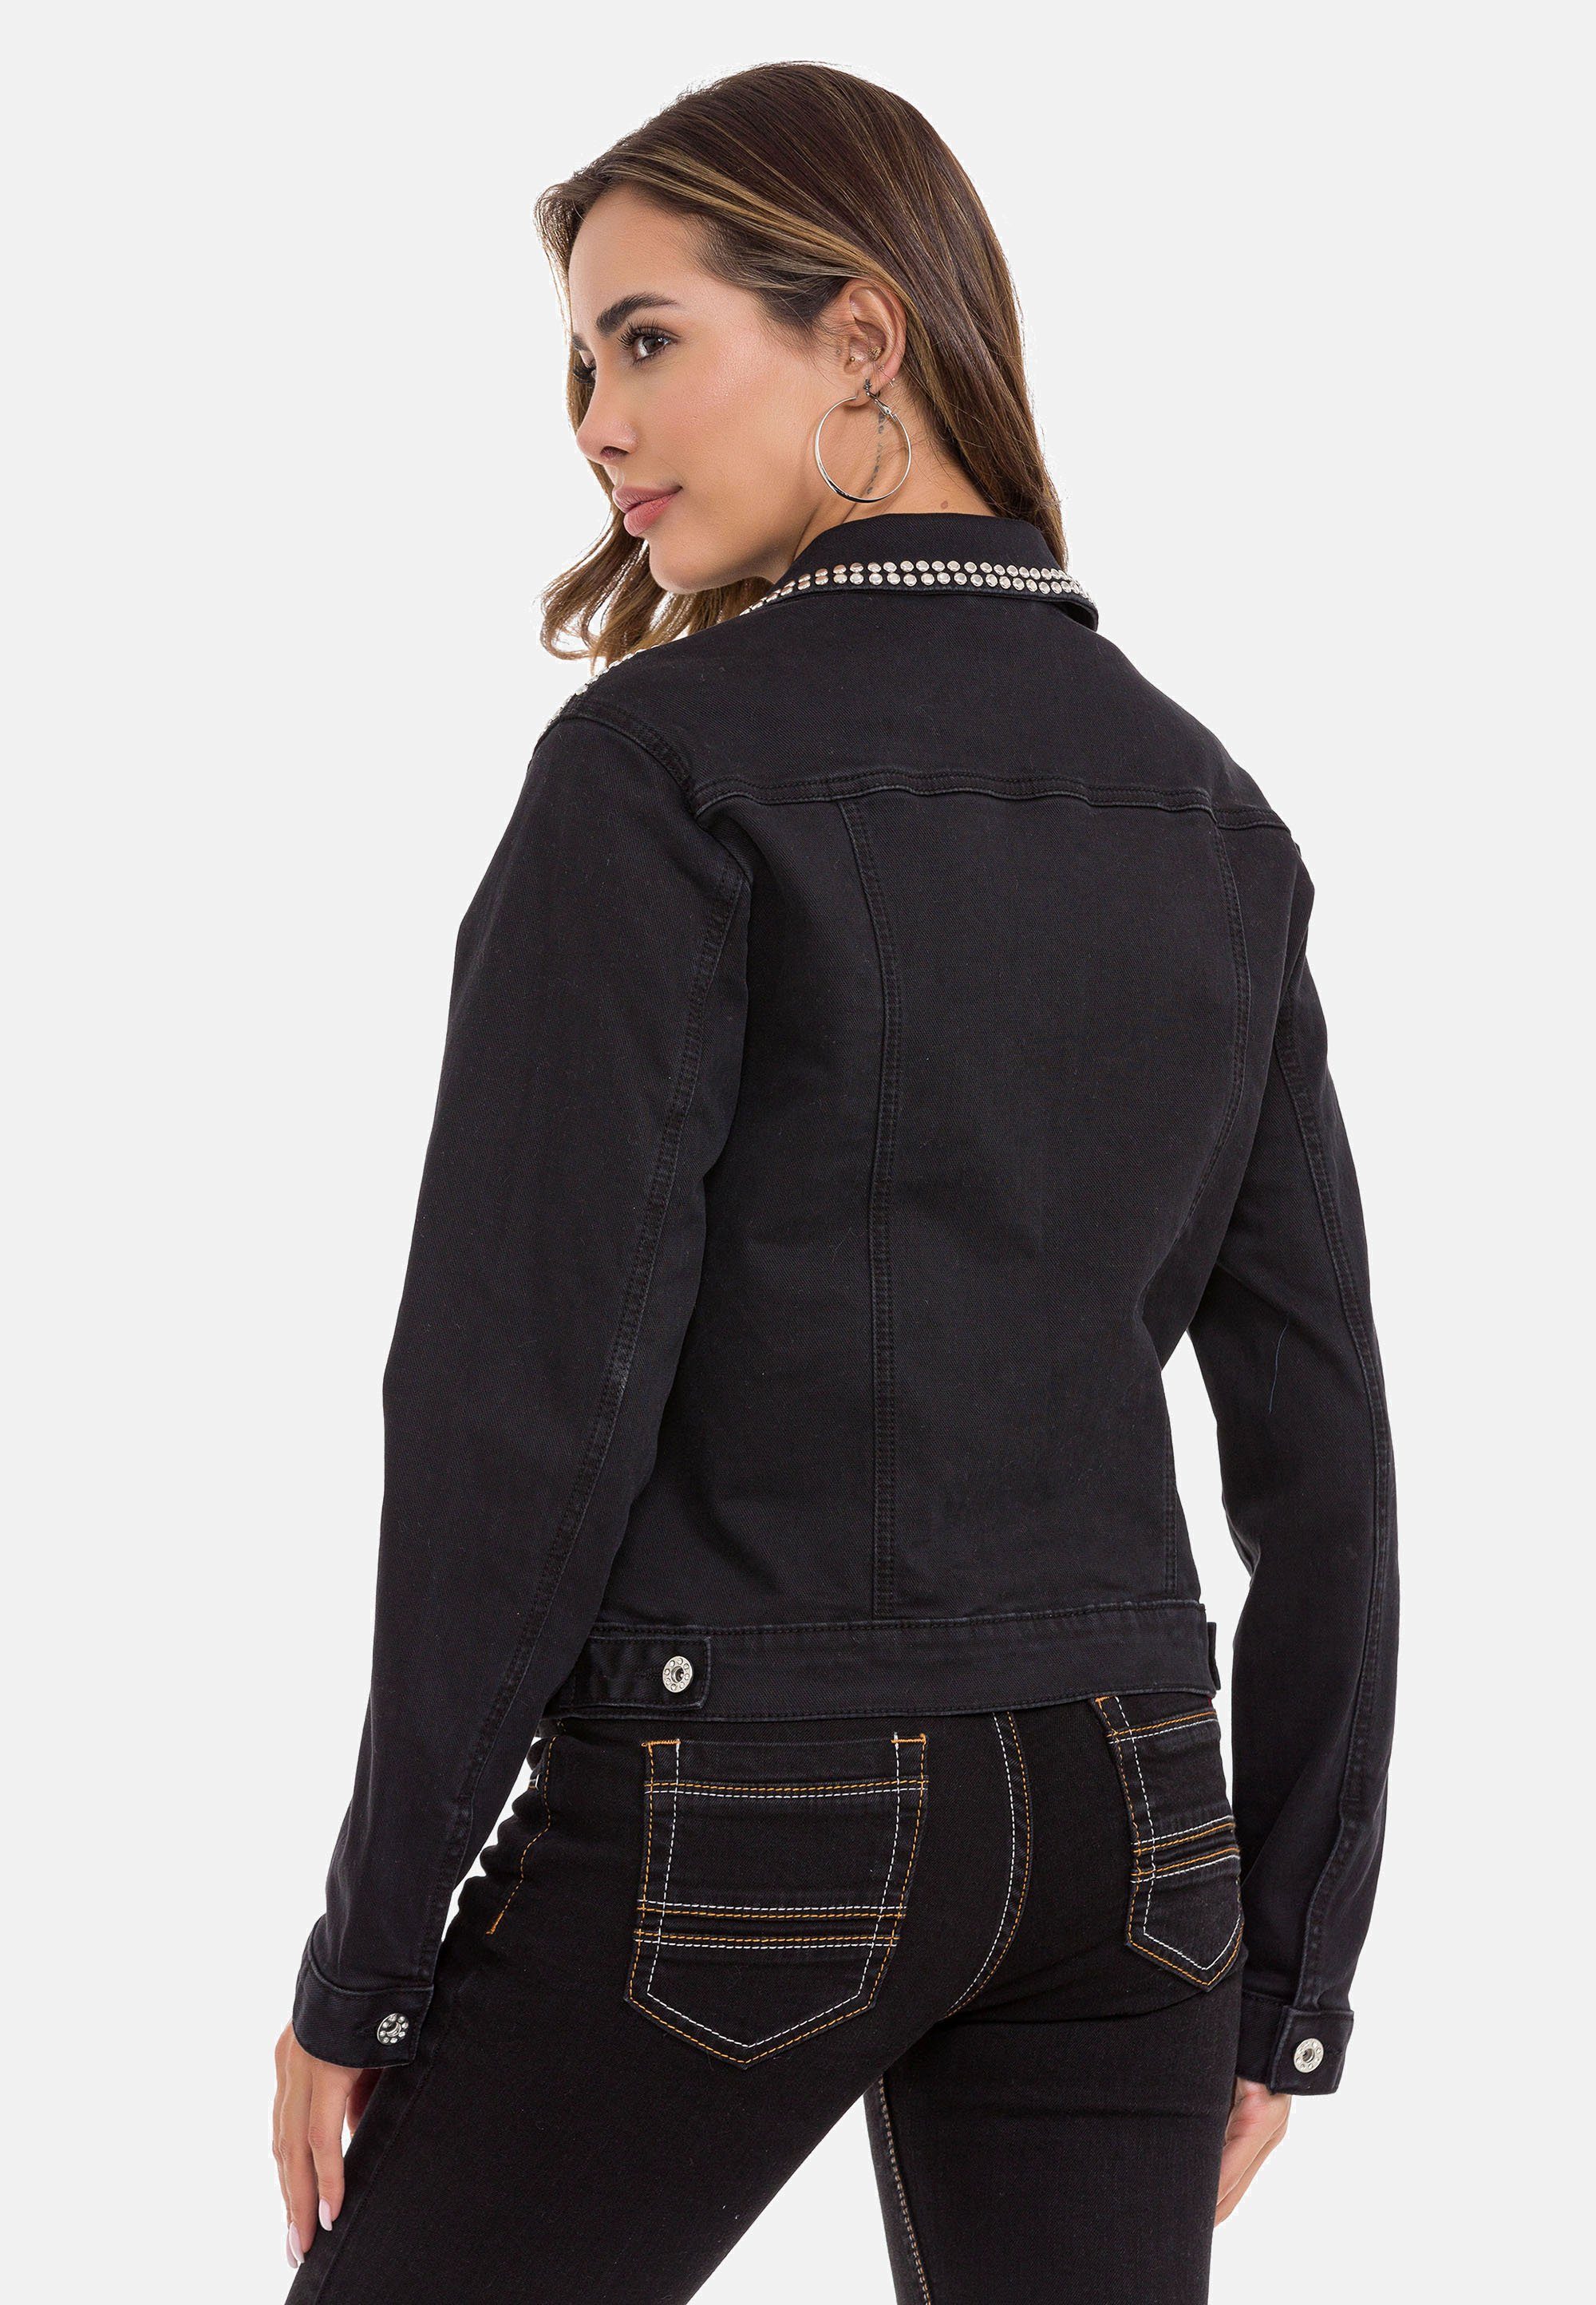 Jeansjacke modernen Baxx schwarz & Cipo mit Nieten-Details